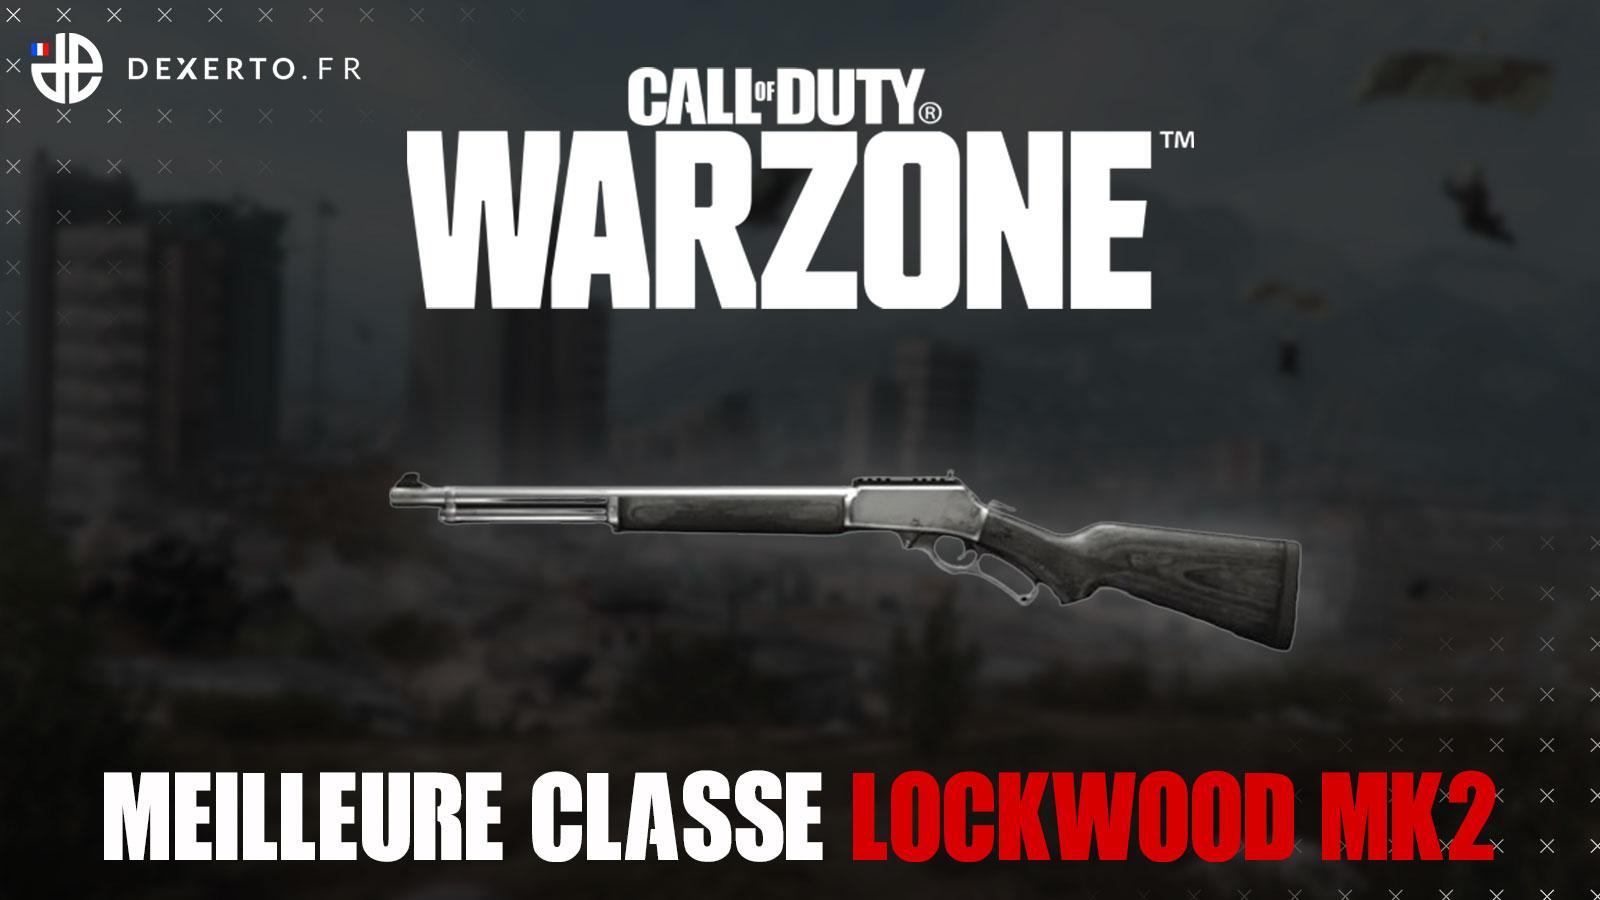 Warzone Lockwood Mk2 meilleure classe